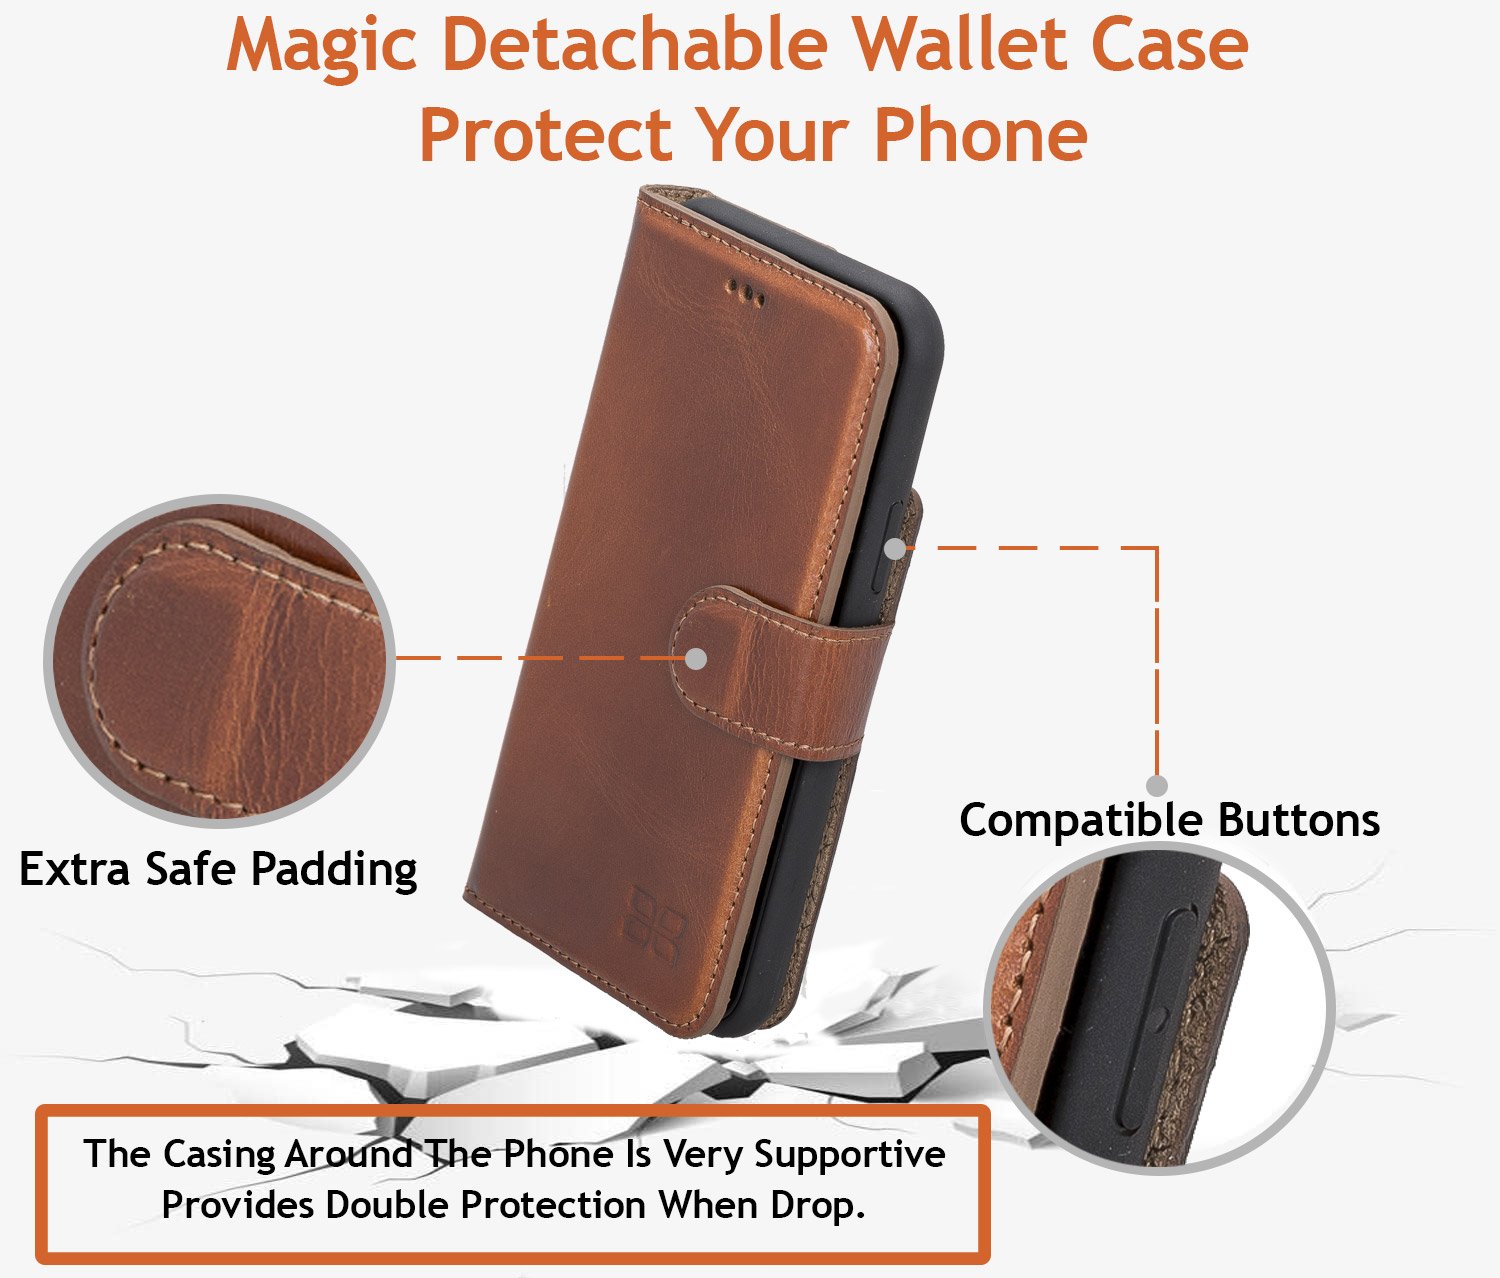 Magnetische abnehmbare Leder Wallet Case mit RFID Blocker für Samsung Galaxy S10 - Antic Brown